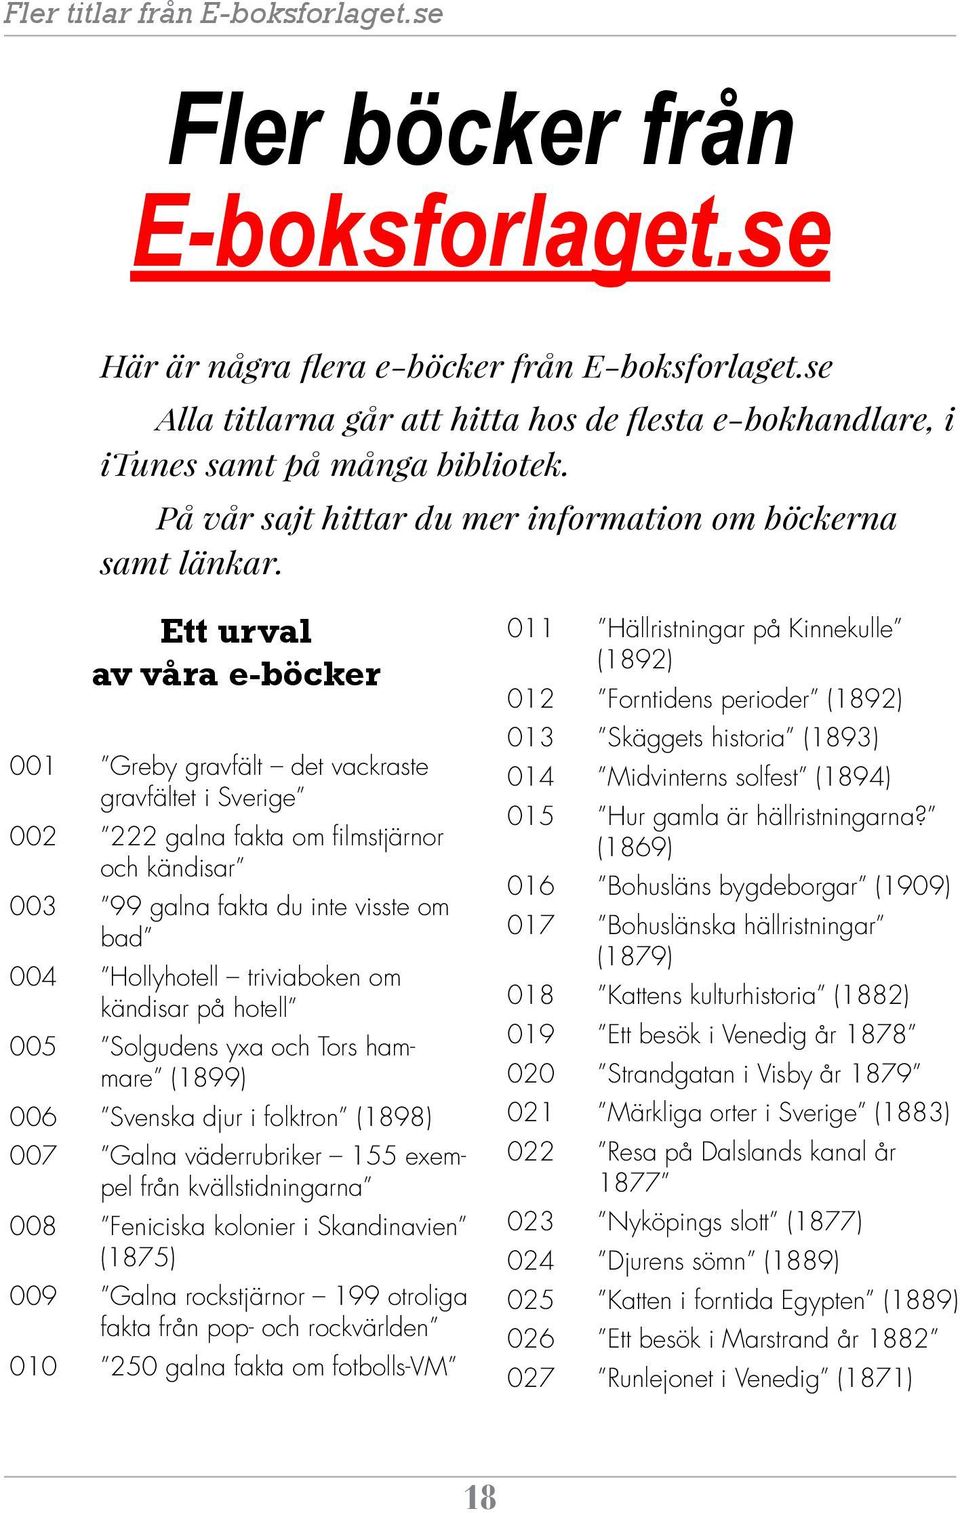 Ett urval av våra e-böcker 001 Greby gravfält det vackraste gravfältet i Sverige 002 222 galna fakta om filmstjärnor och kändisar 003 99 galna fakta du inte visste om bad 004 Hollyhotell triviaboken